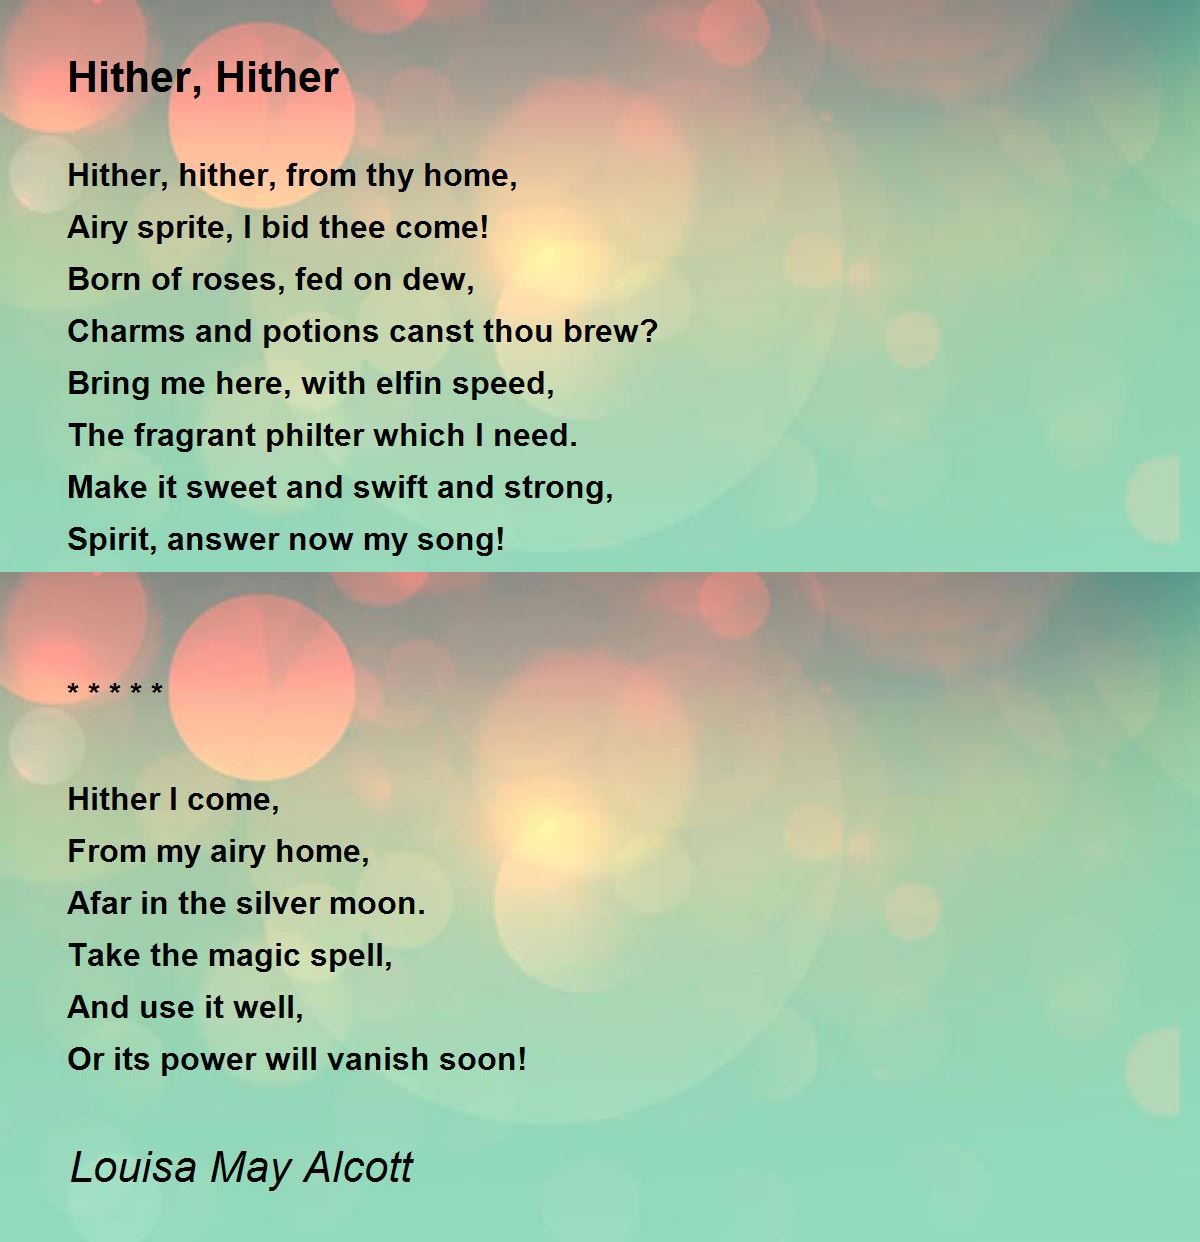 My Kingdom - My Kingdom Poem by Louisa May Alcott